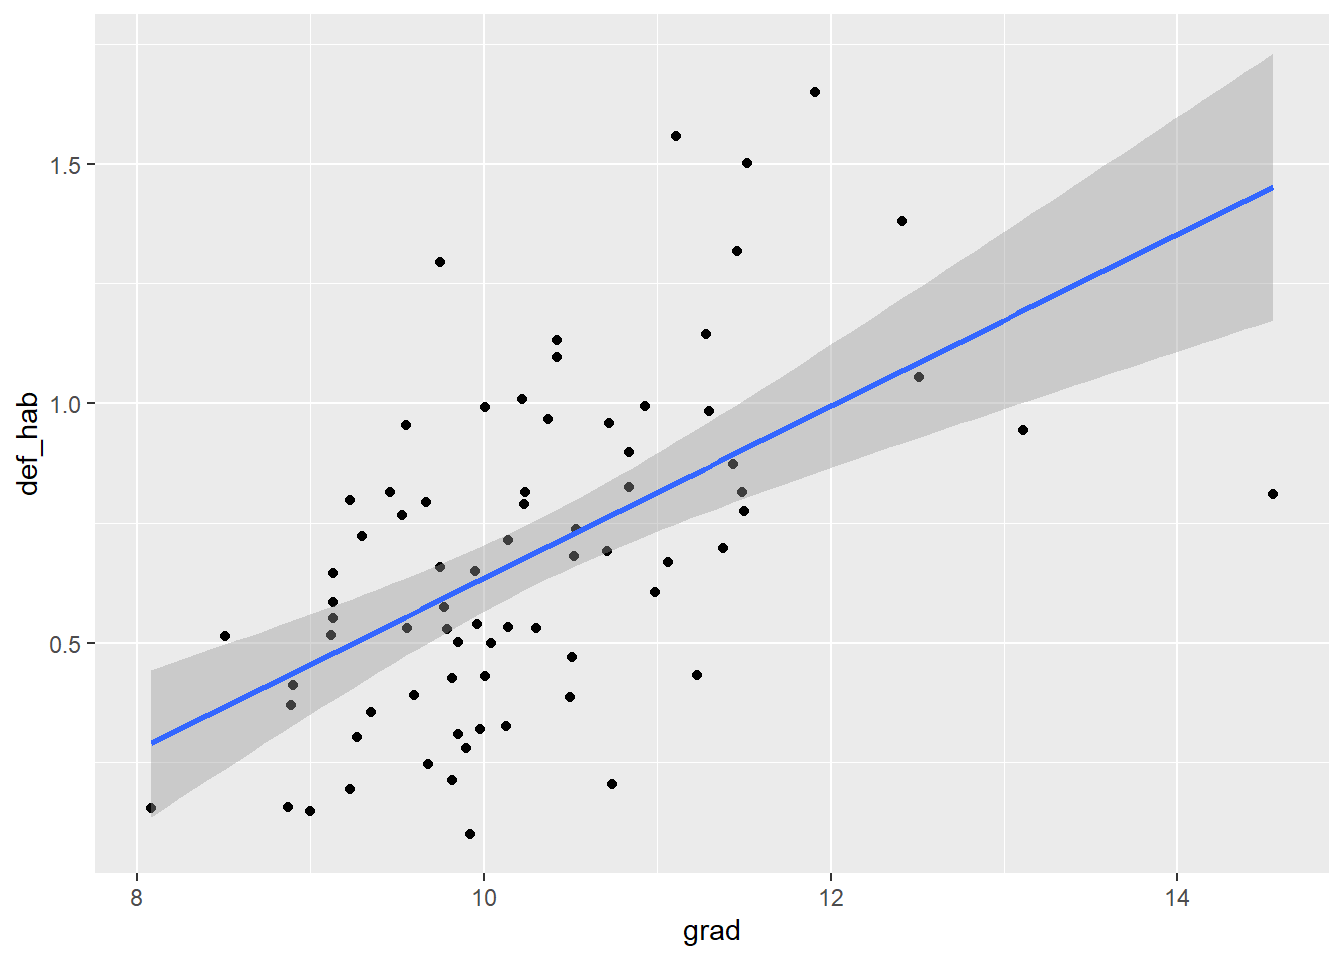 Grafico de dispersión que presenta una relación entre el número promedio de grados cursados (grad) y el número de defunciones (def_hab). Los puntos se muestran más dispersos en comparación con la grafica anterior, no obtante, la recta azul muestra de igual manera una relación positiva.